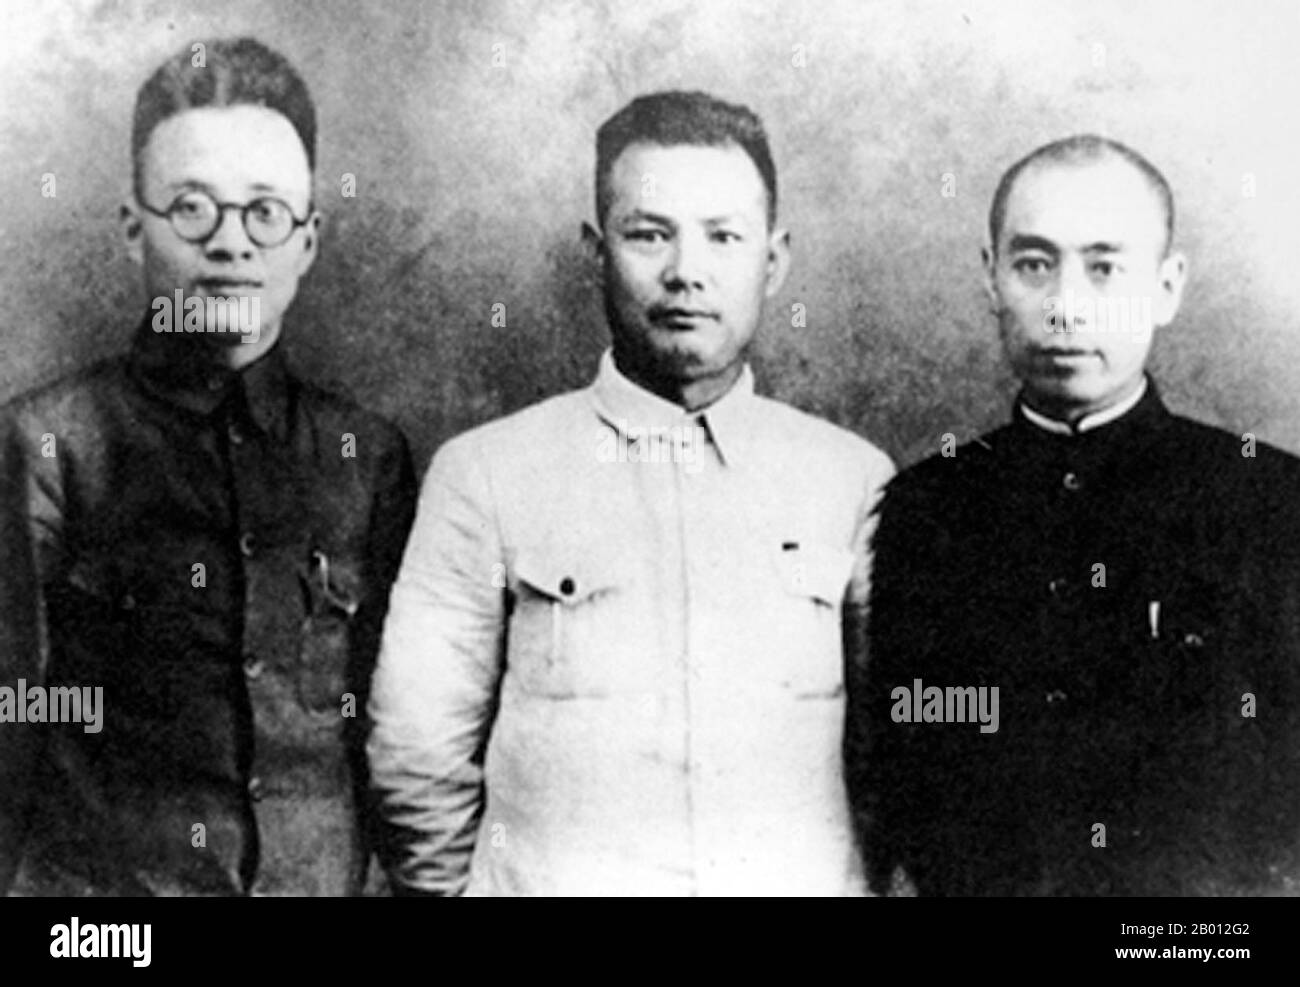 Chine : Qin Bangxian, Ye Jianying et Zhou Enlai à Xi'an après l'incident de Xi'an, 1936. L'incident de Xi'an de décembre 1936 (Xī'an Shibiìan) a eu lieu dans la ville de Xi'an pendant la guerre civile chinoise entre le Kuomintang (KMT) au pouvoir et le Parti communiste chinois rebelle et juste avant la seconde guerre sino-japonaise. Le 12 décembre 1936, le général Chiang Kai-shek, chef du KMT, a été arrêté et enlevé par le maréchal Zhang Xueliang, ancien seigneur de guerre de Manchurie, alors Manchukuo occupé par le Japon. L'incident a conduit les nationalistes et les communistes à s'unir contre le Japon. Banque D'Images